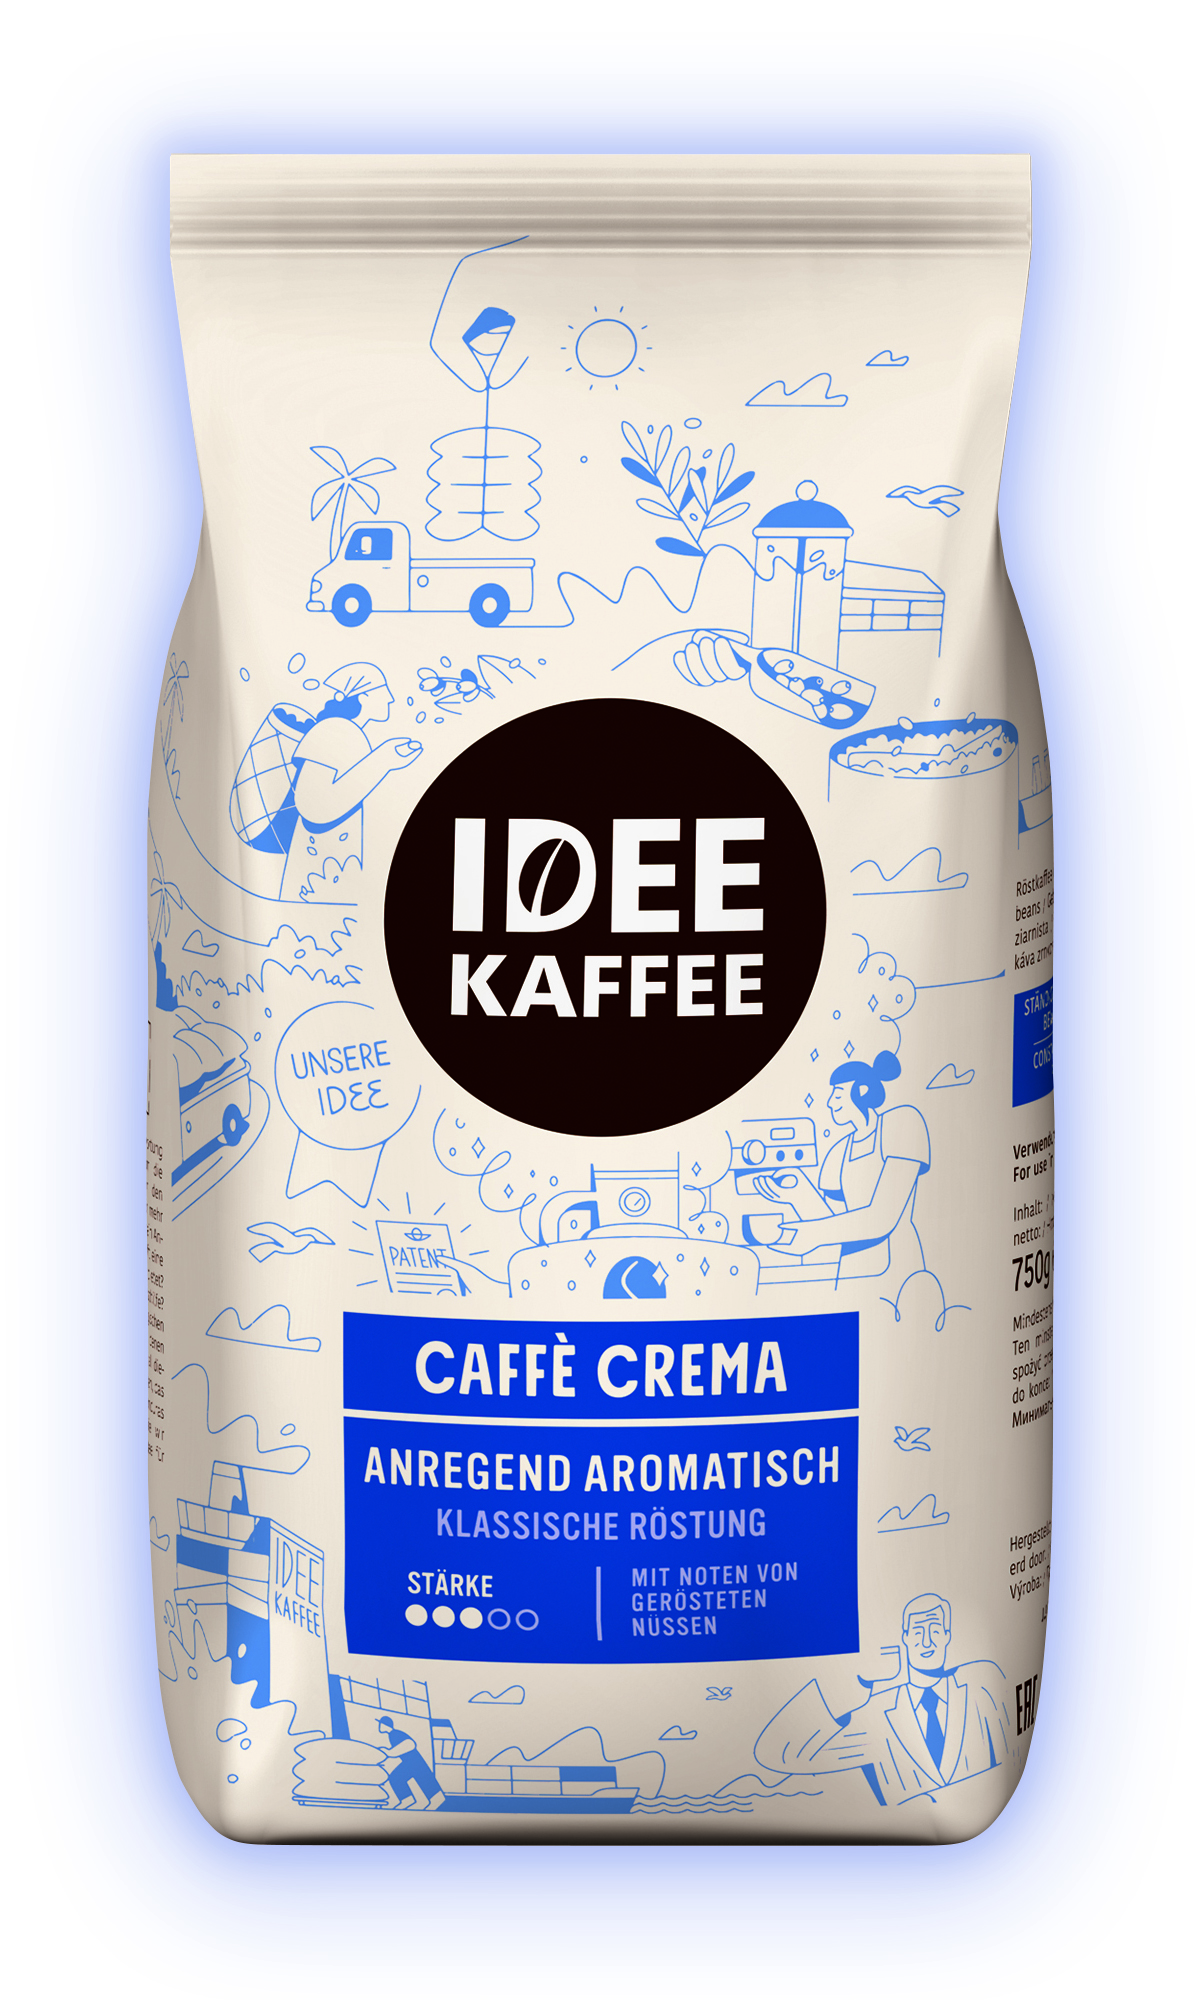 IDEE KAFFEE Caffè Crema Anregend Aromatisch